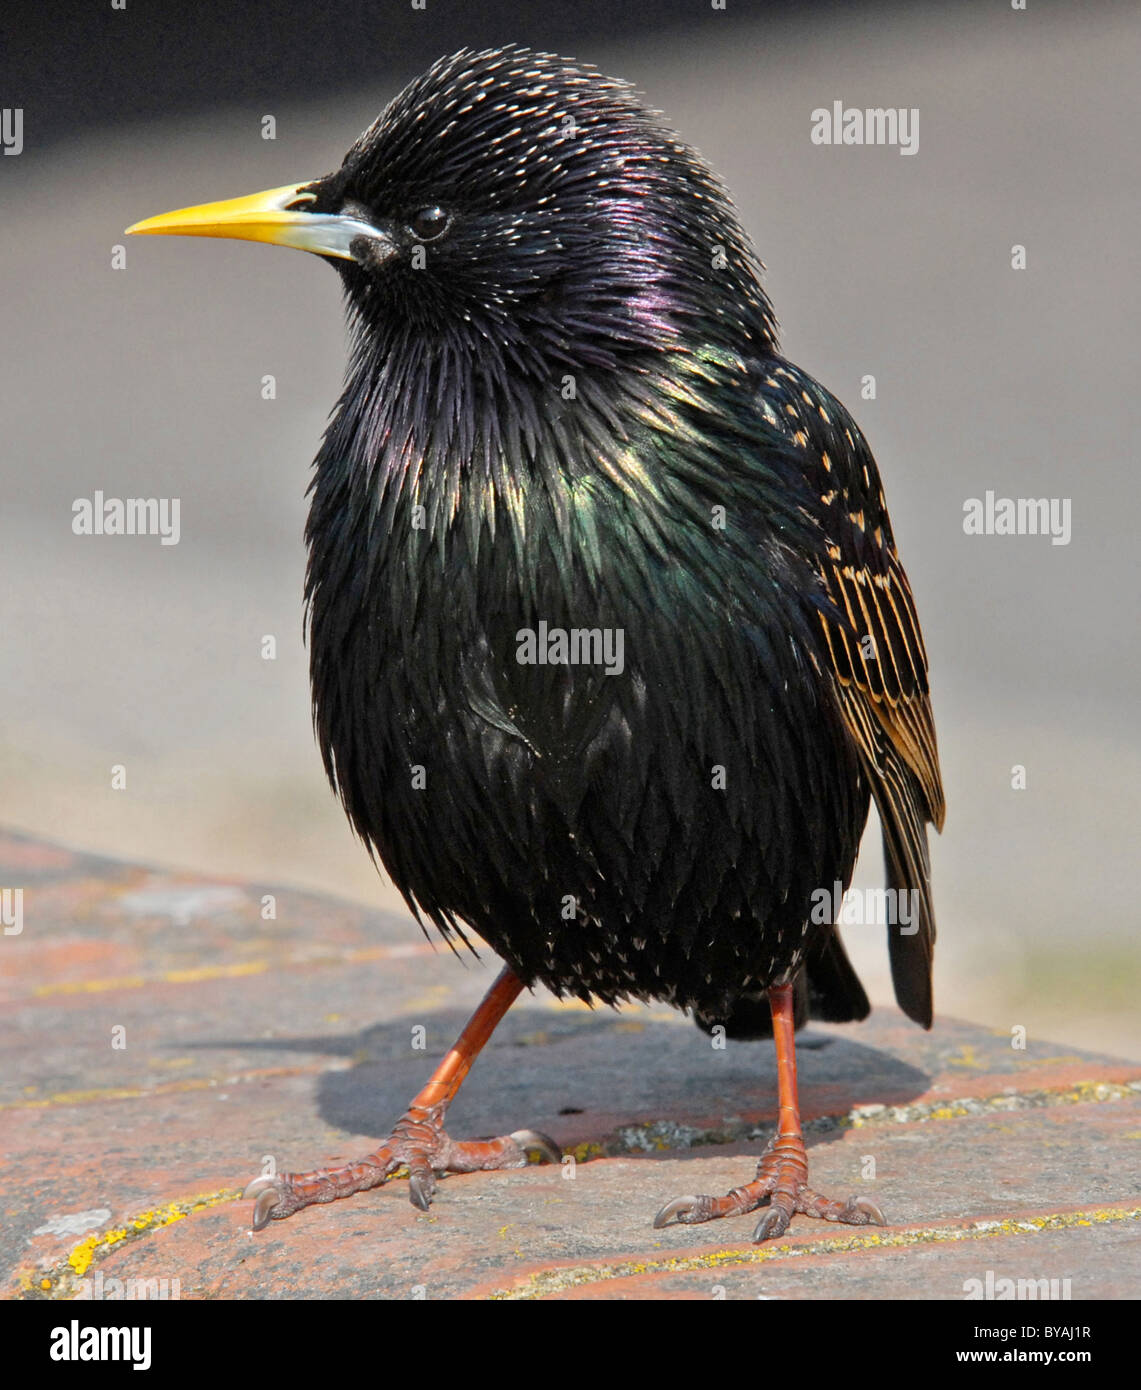 STARLING (Sturnus vulgaris vulgaris) Bien amados pájaros británica ahora en serio declive. Foto de stock